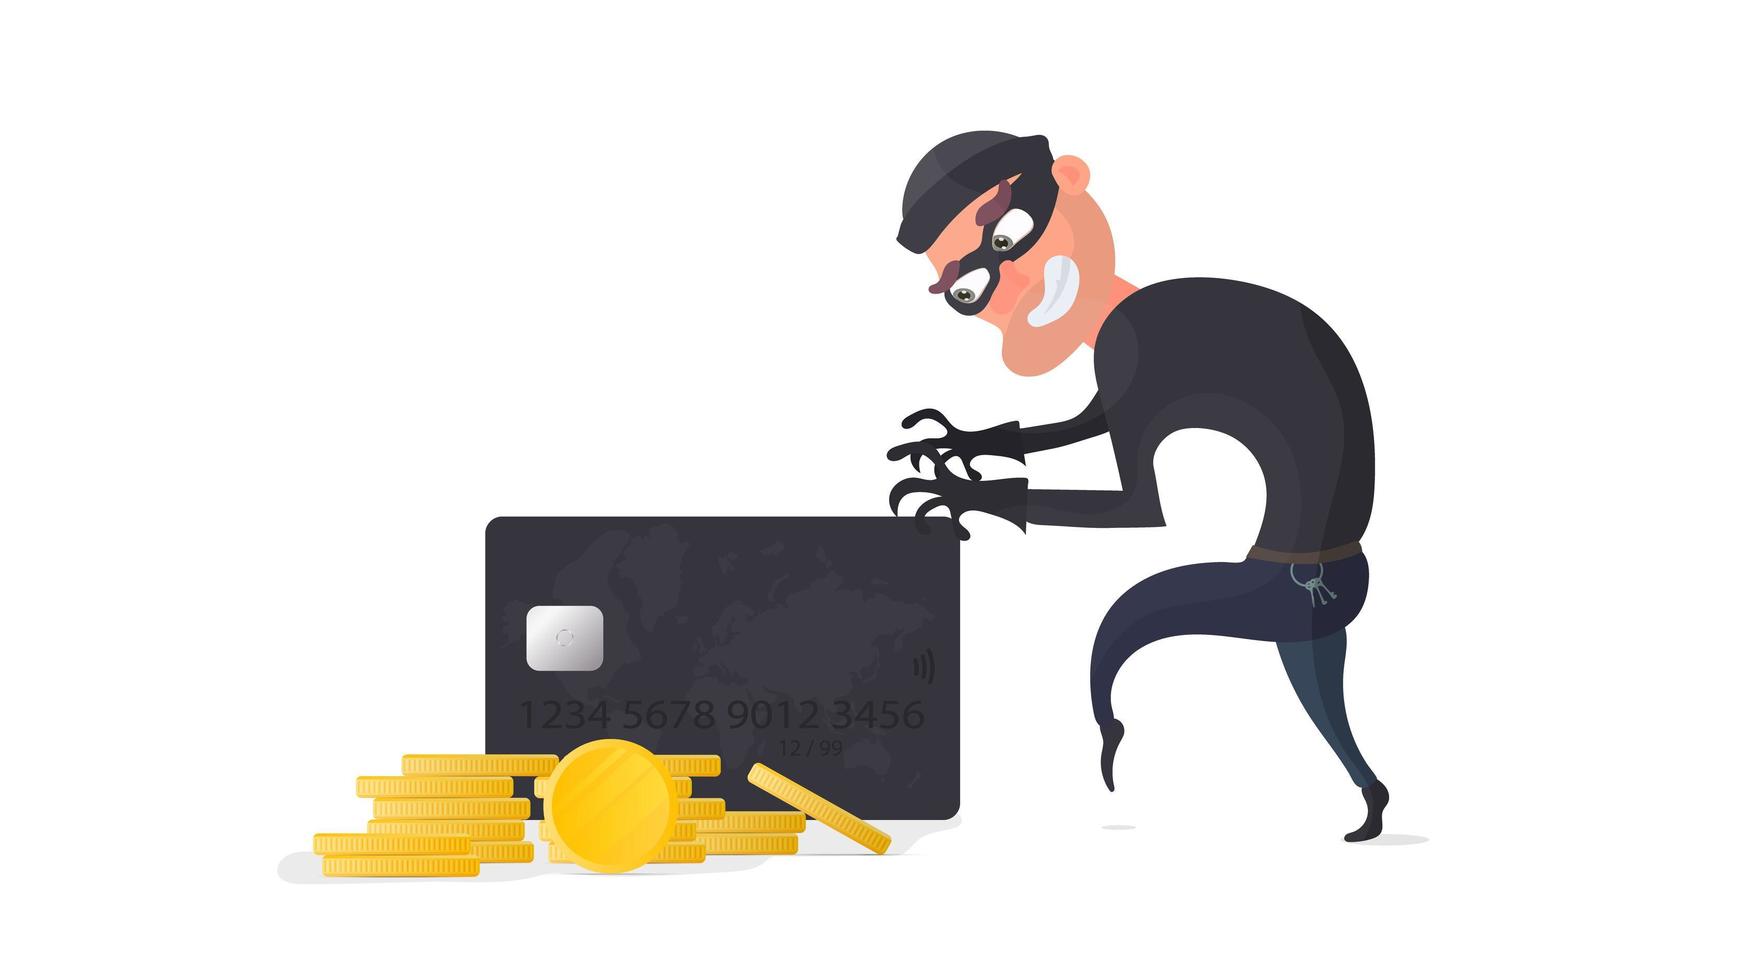 el ladrón roba una tarjeta bancaria. el ladrón está tratando de robar una tarjeta bancaria. bueno para el tema de seguridad, robo, estafa y fraude. aislado. vector. vector